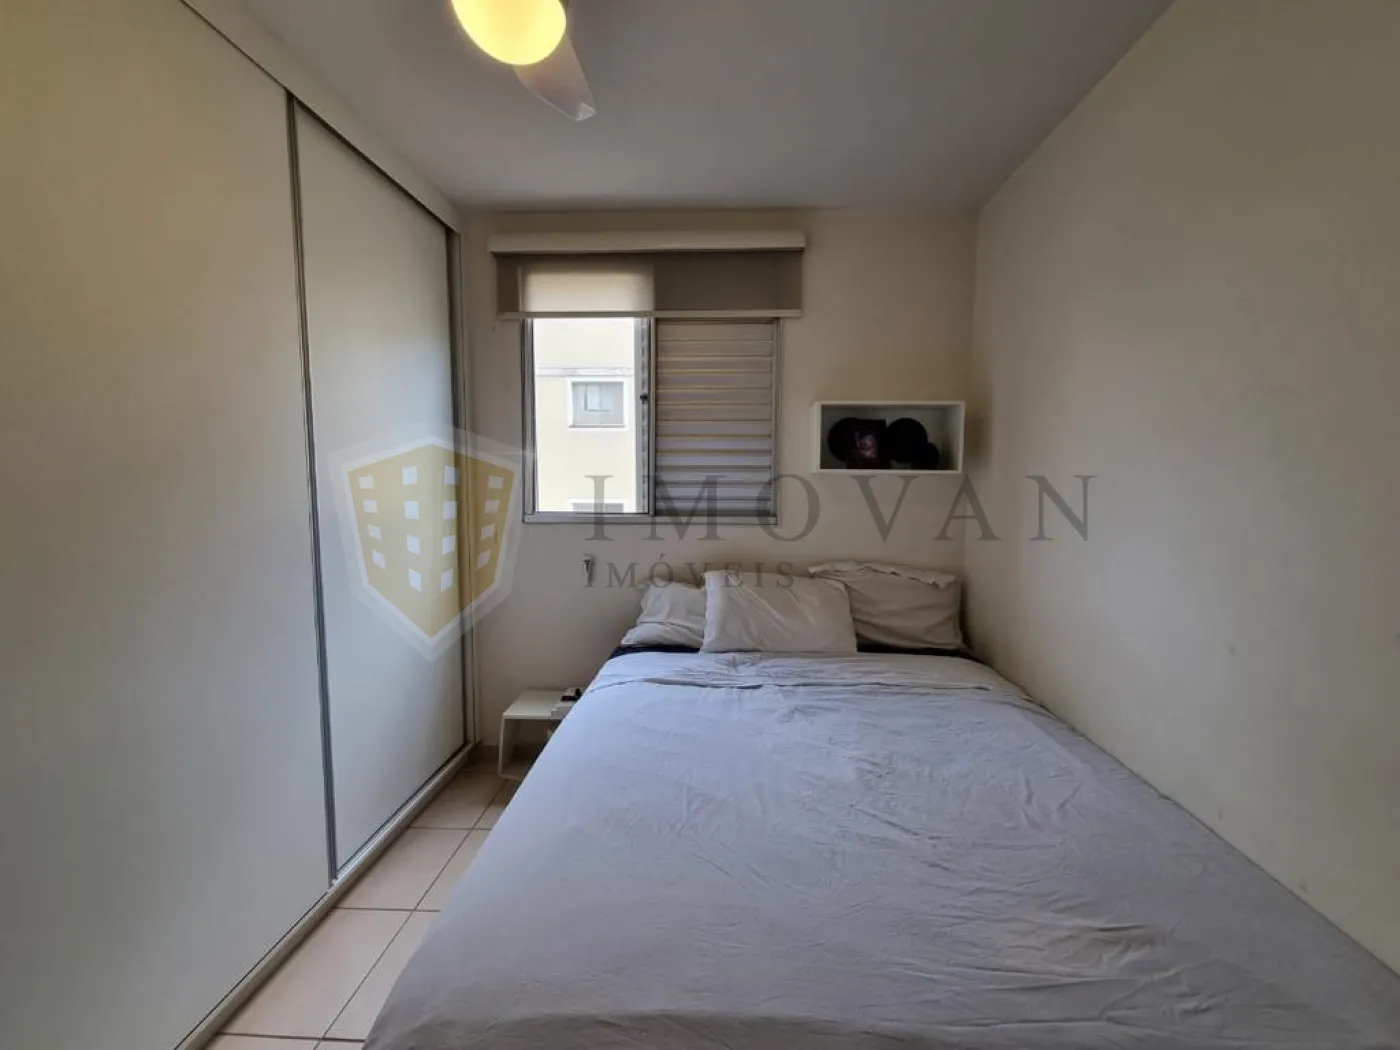 Comprar Apartamento / Padrão em Ribeirão Preto R$ 170.000,00 - Foto 15